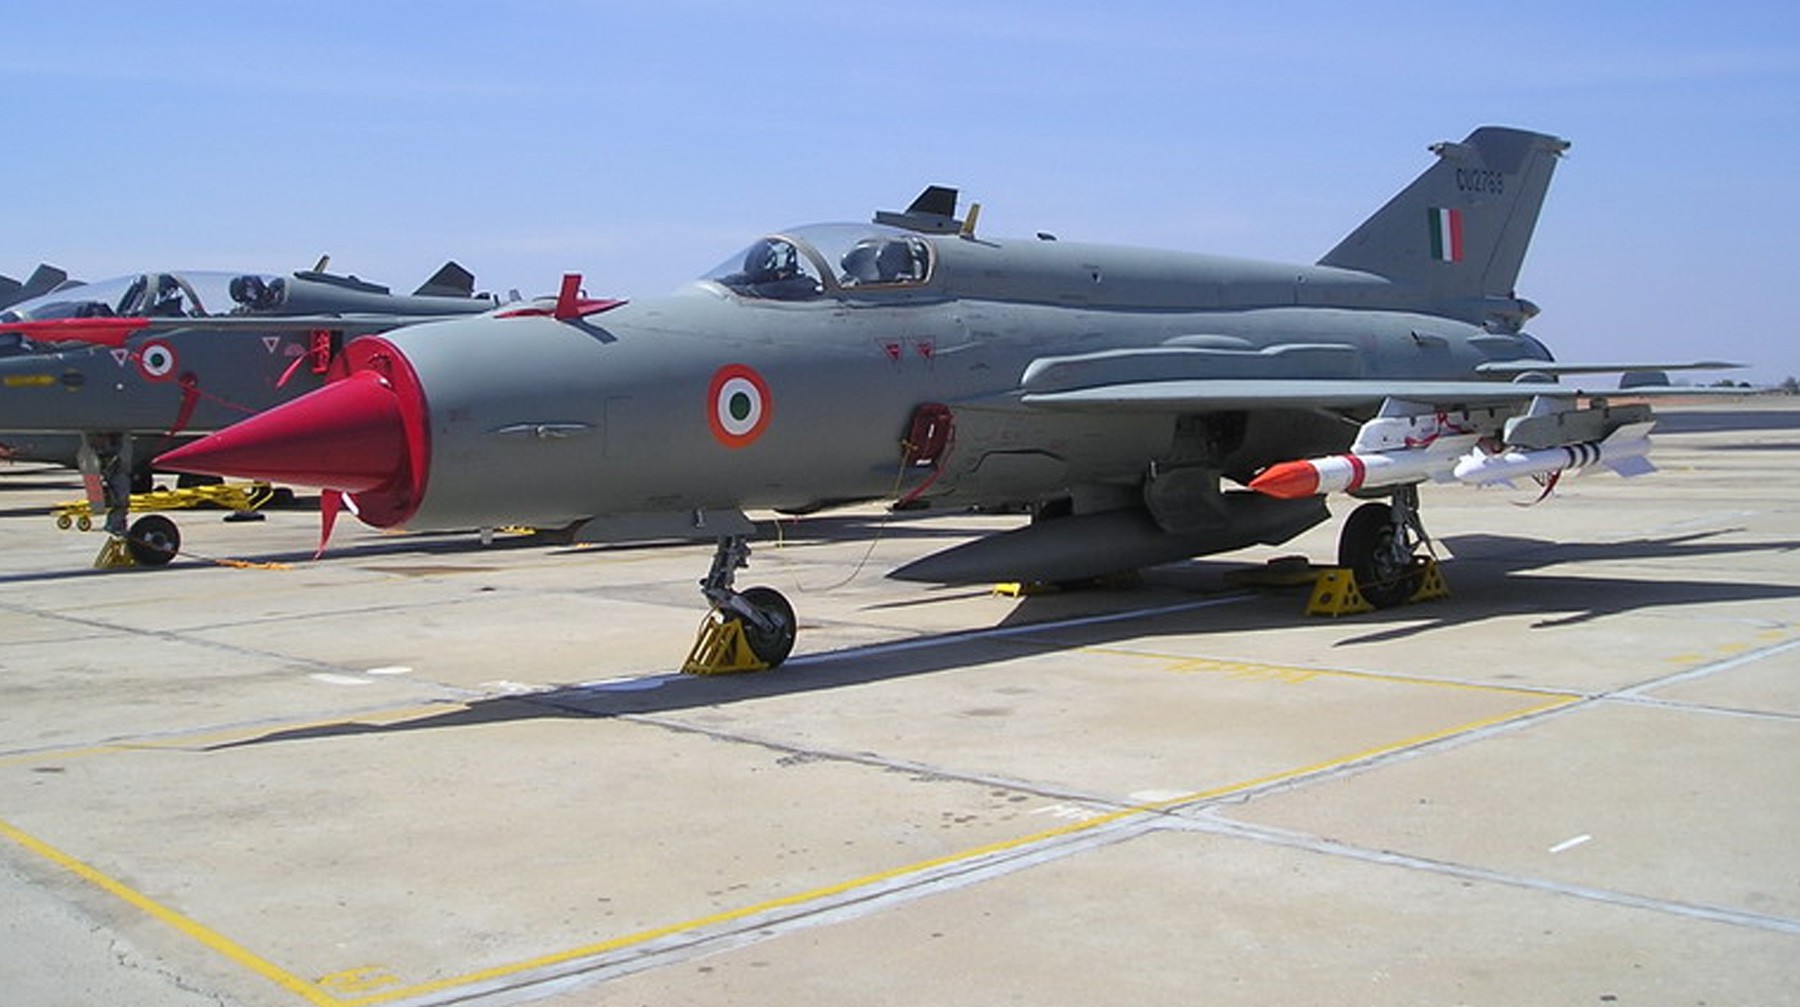 Dailystorm - Пакистан освободил пилота ВВС Индии